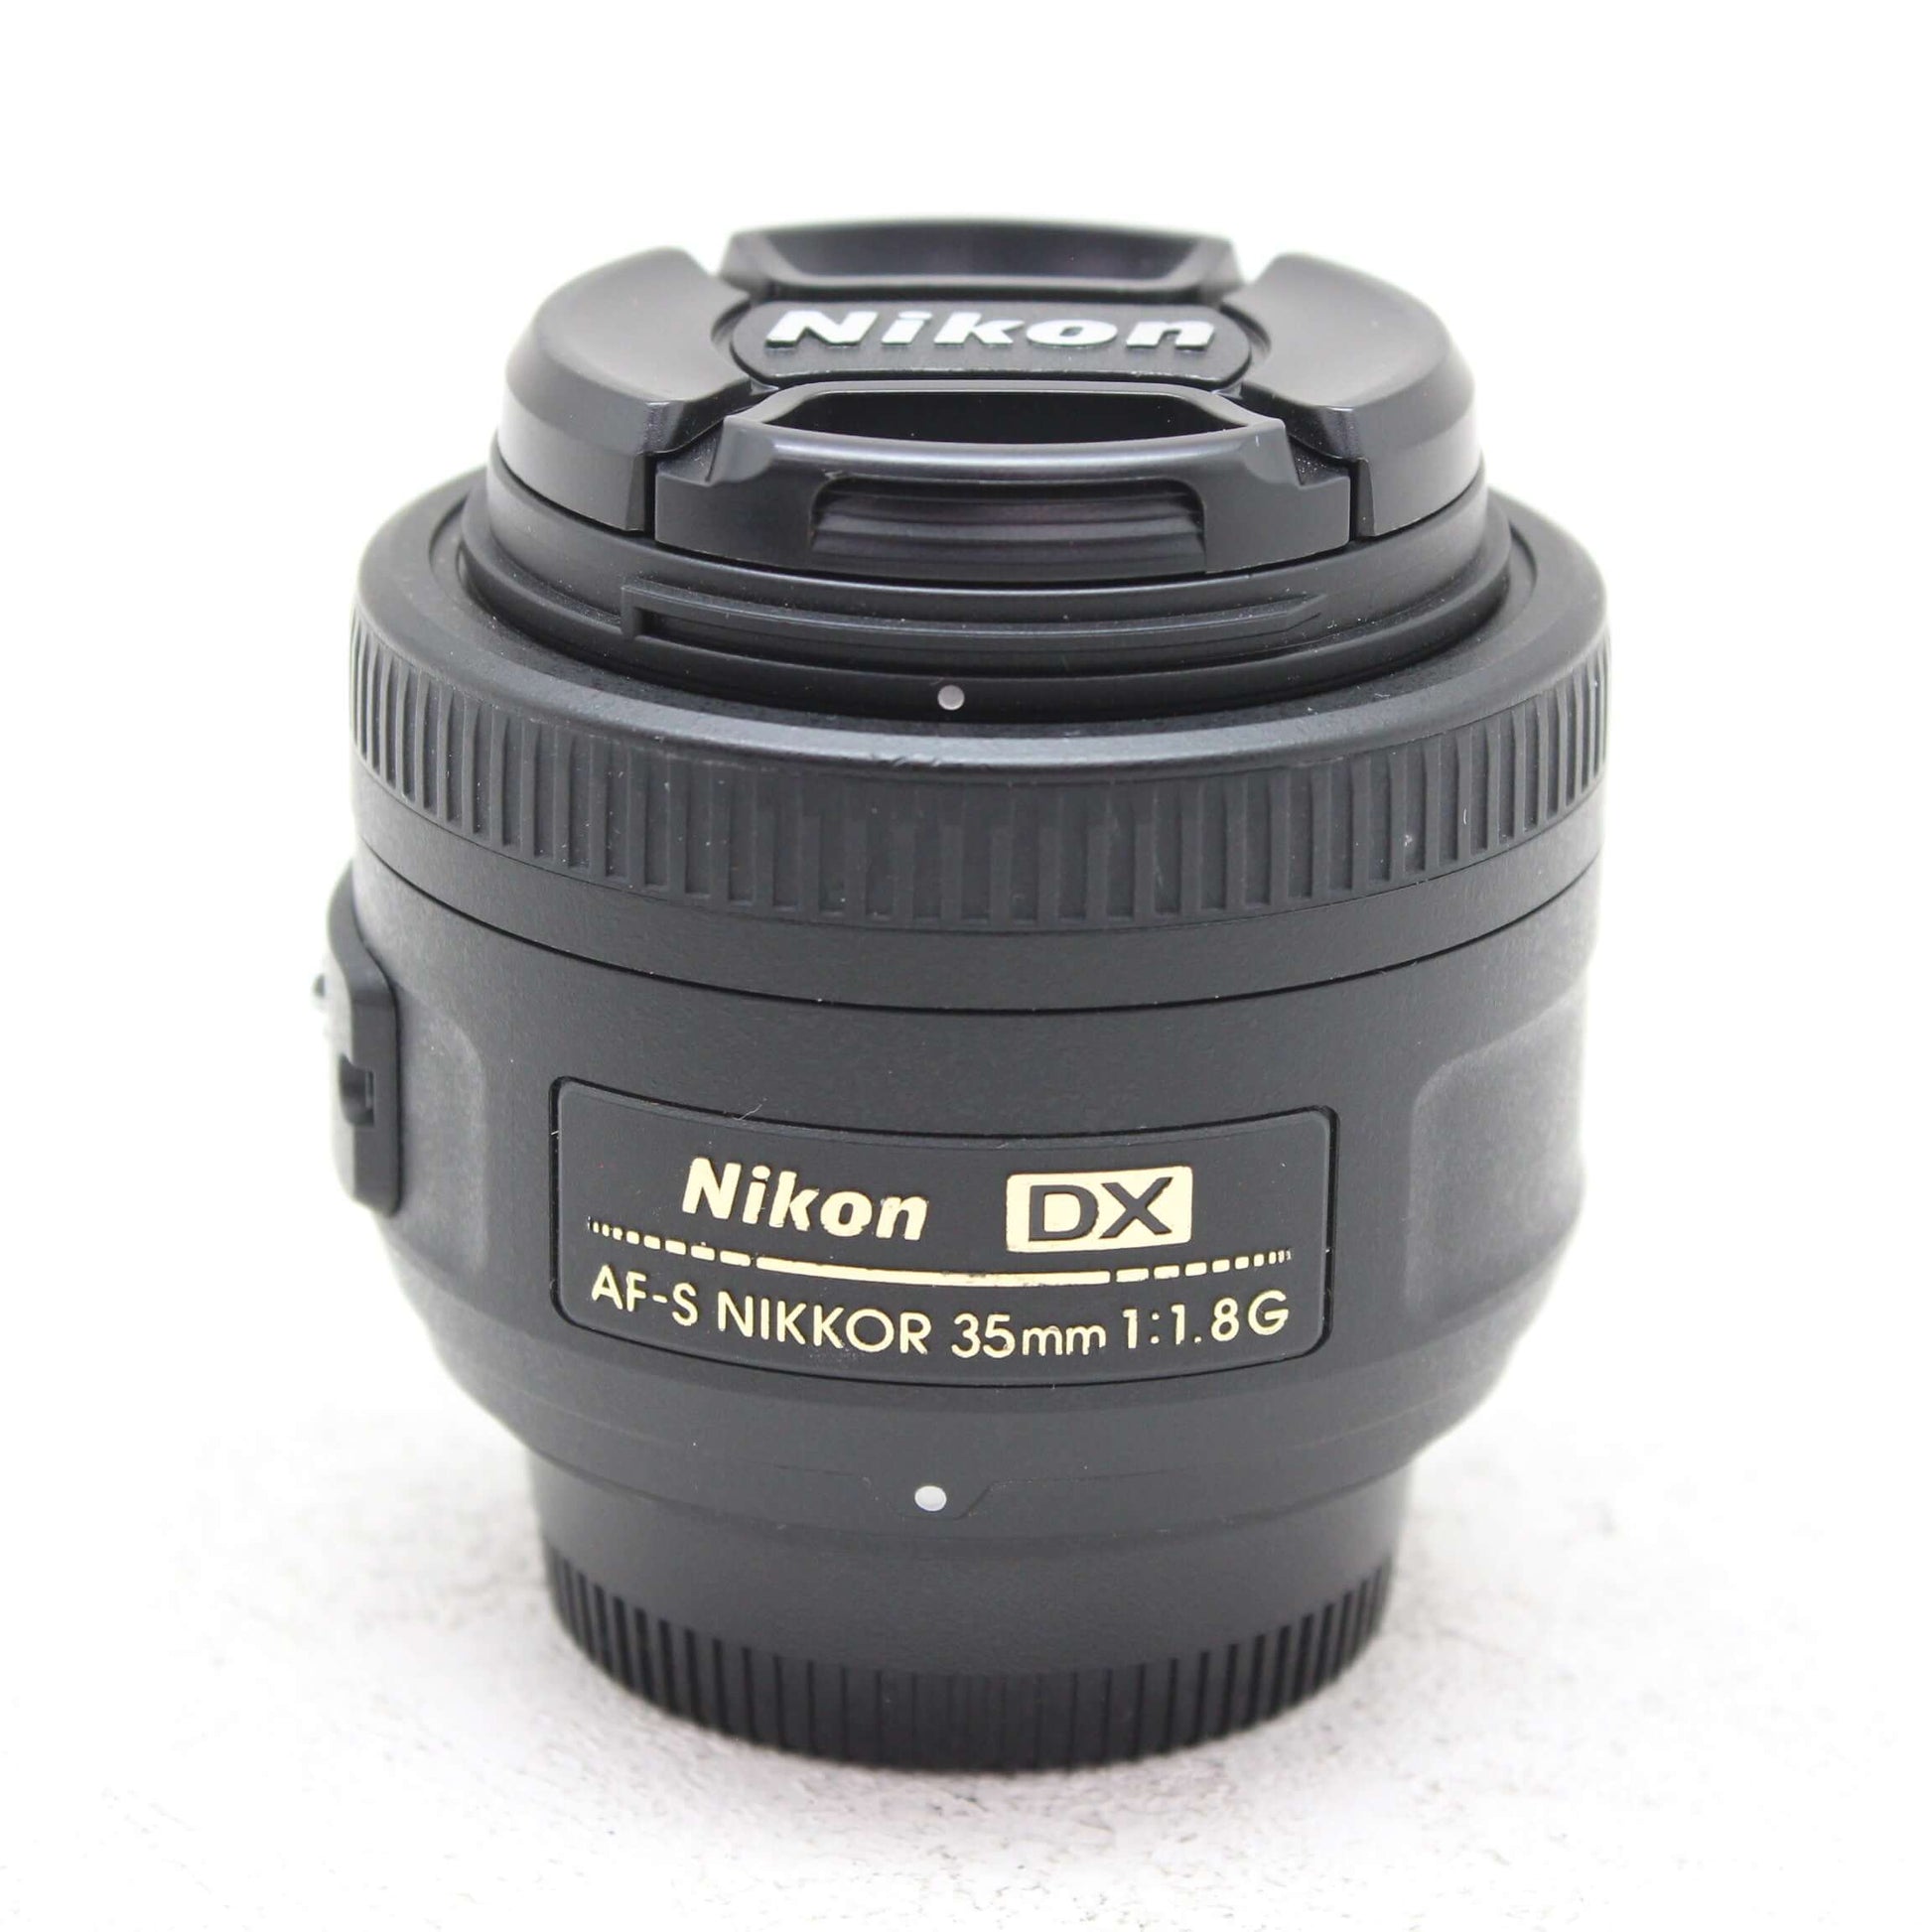 中古品 Nikon AF-S NIKKOR DX 35mm F1.8G【3月5日(火) youtube生配信で